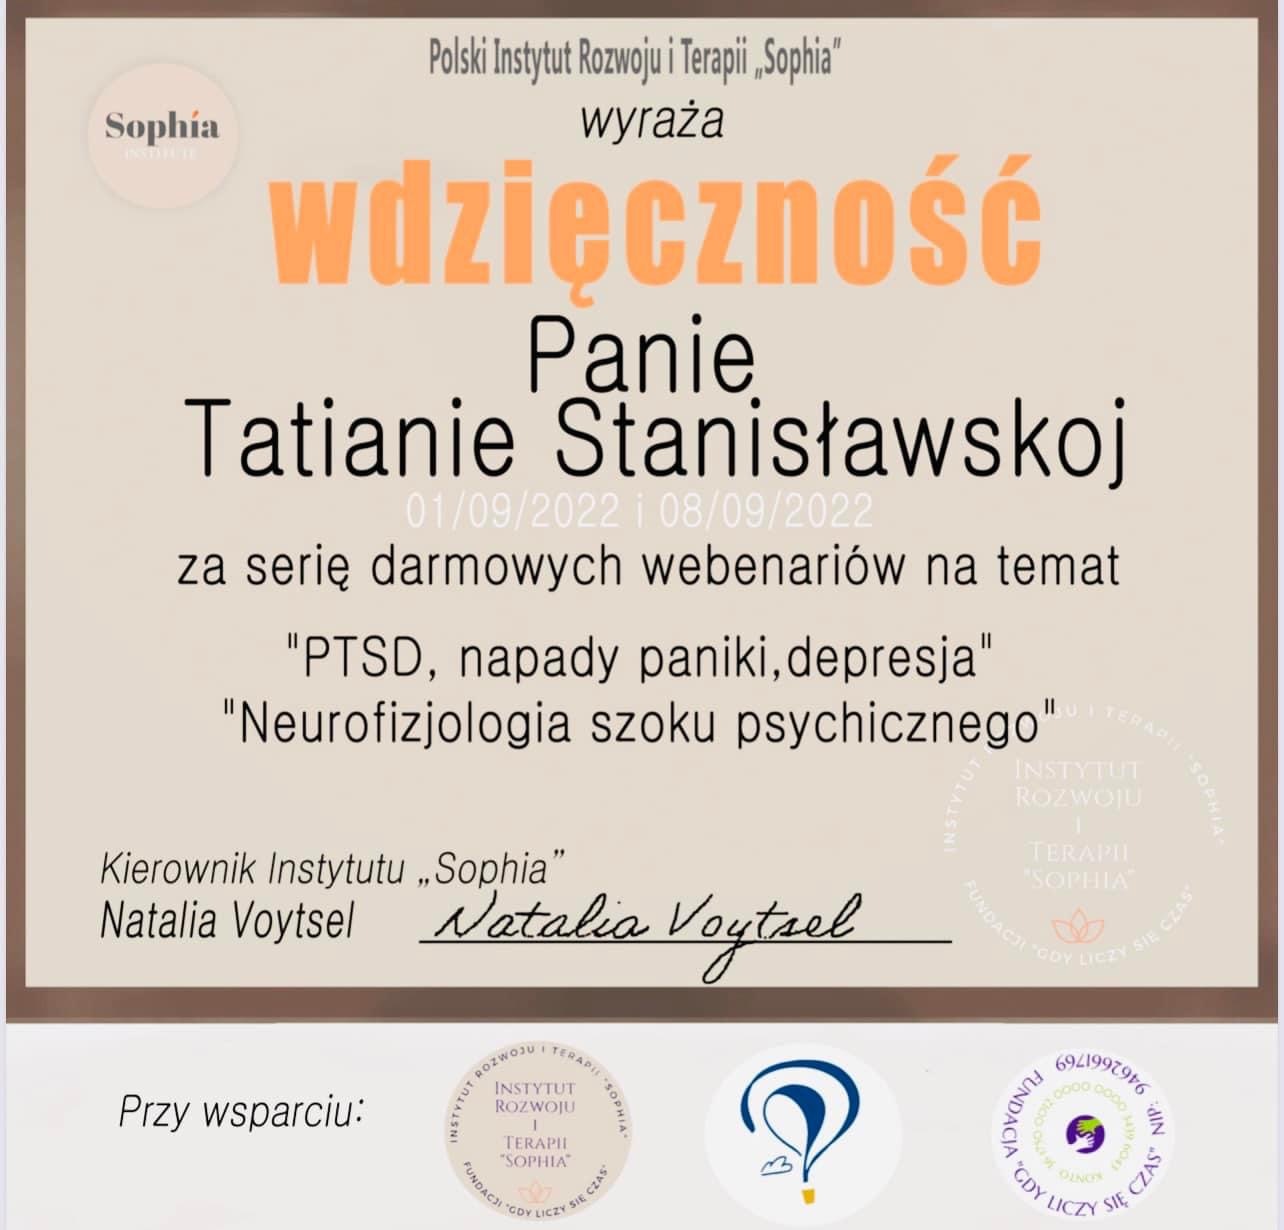 Благодарность от польского Института Развития и Терапии Sophia за проведение вебинаров